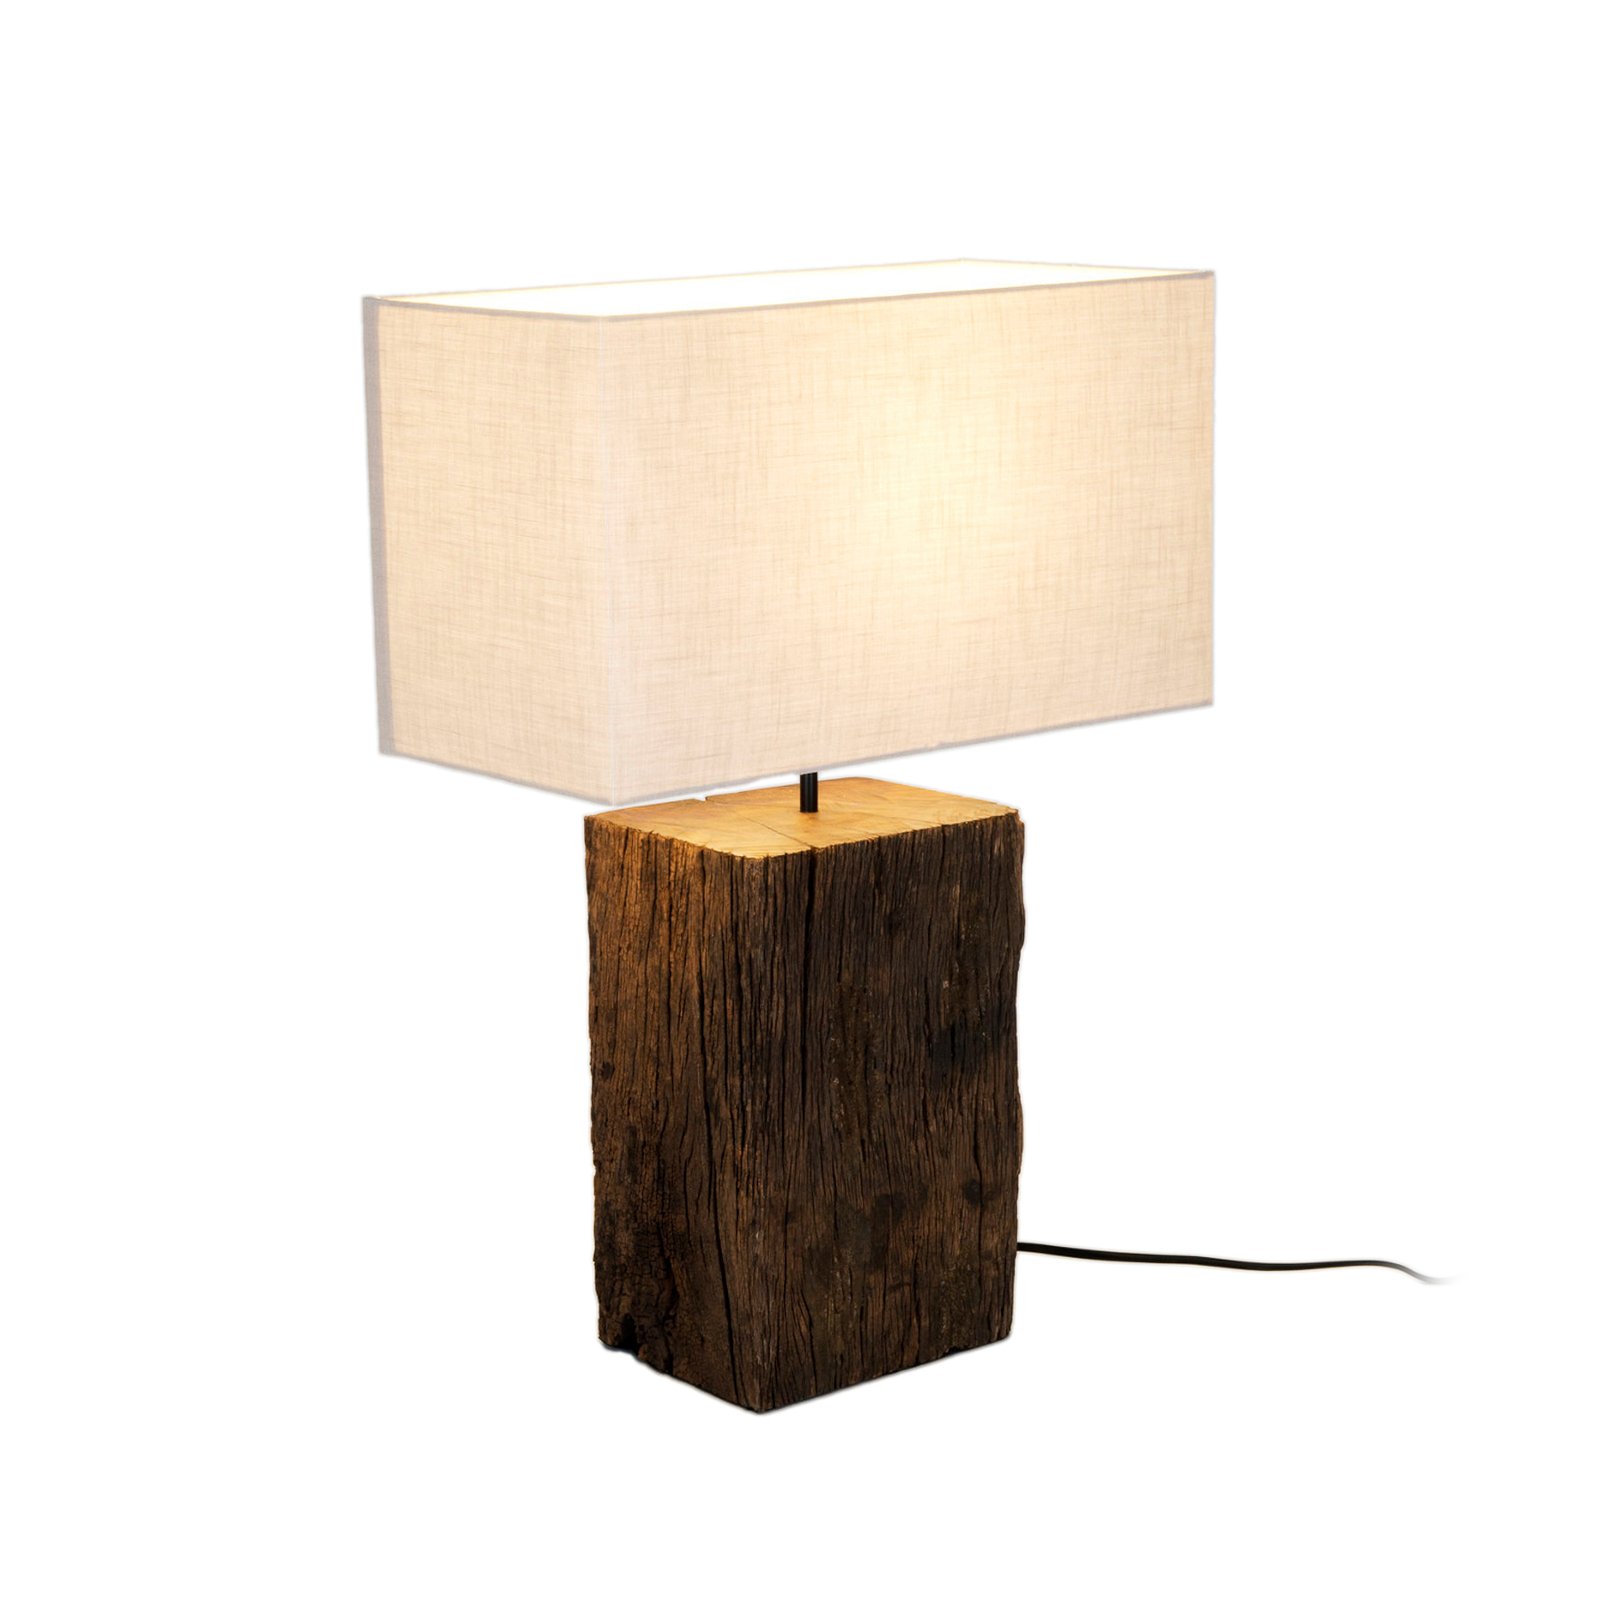 Lampe à poser Montecristo, couleur bois/beige, hauteur 59 cm, bois